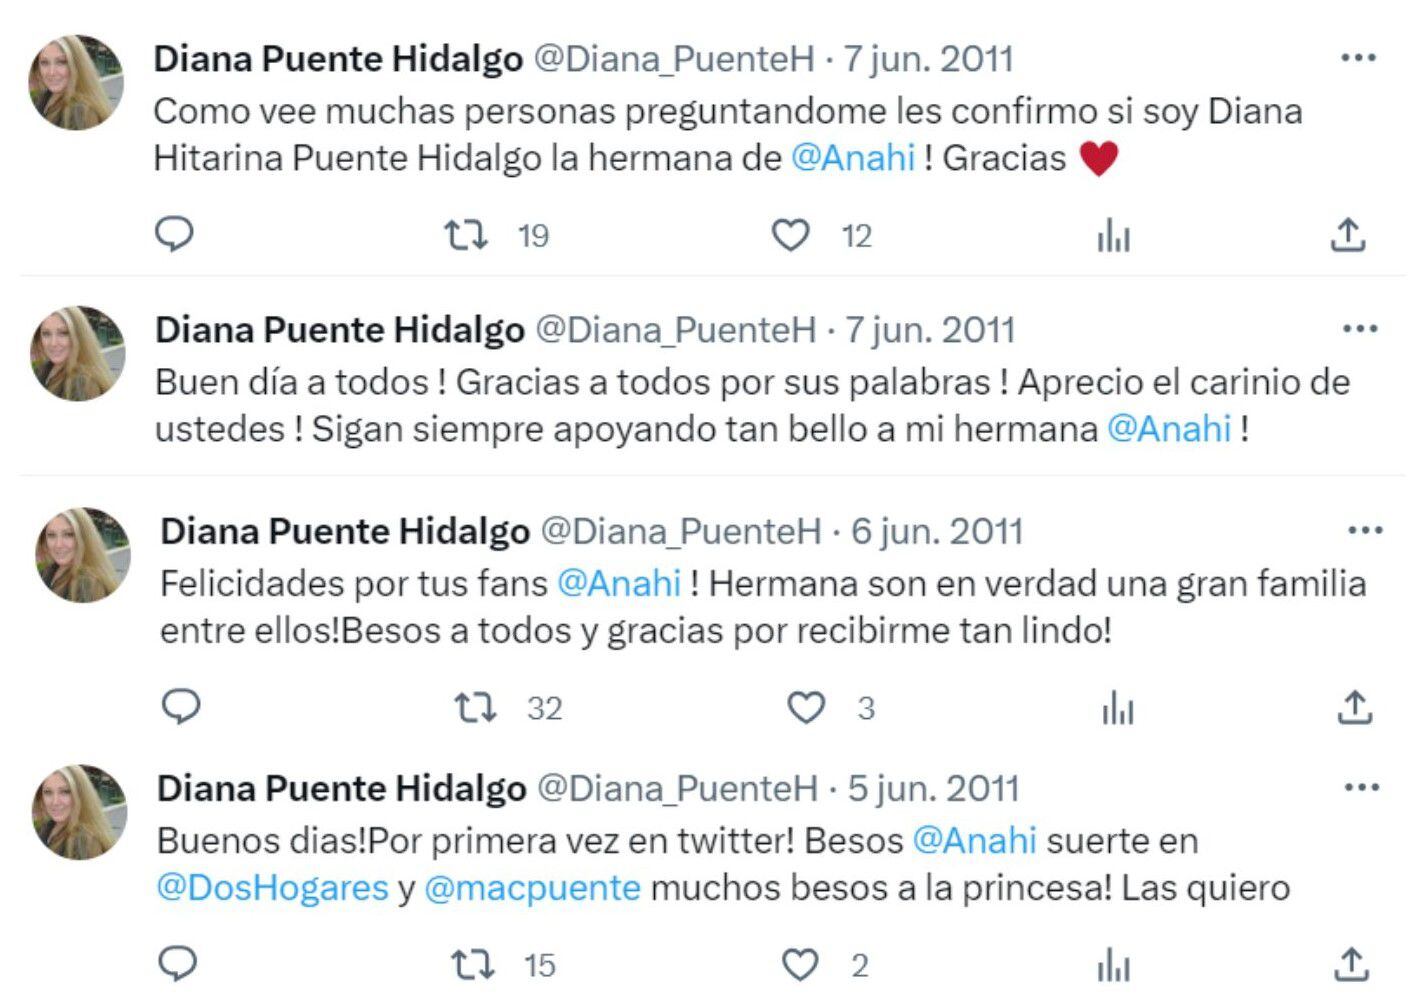 Diana Puente Hidalgo confirmó que Anahí es su hermana. Créditos a Twitter